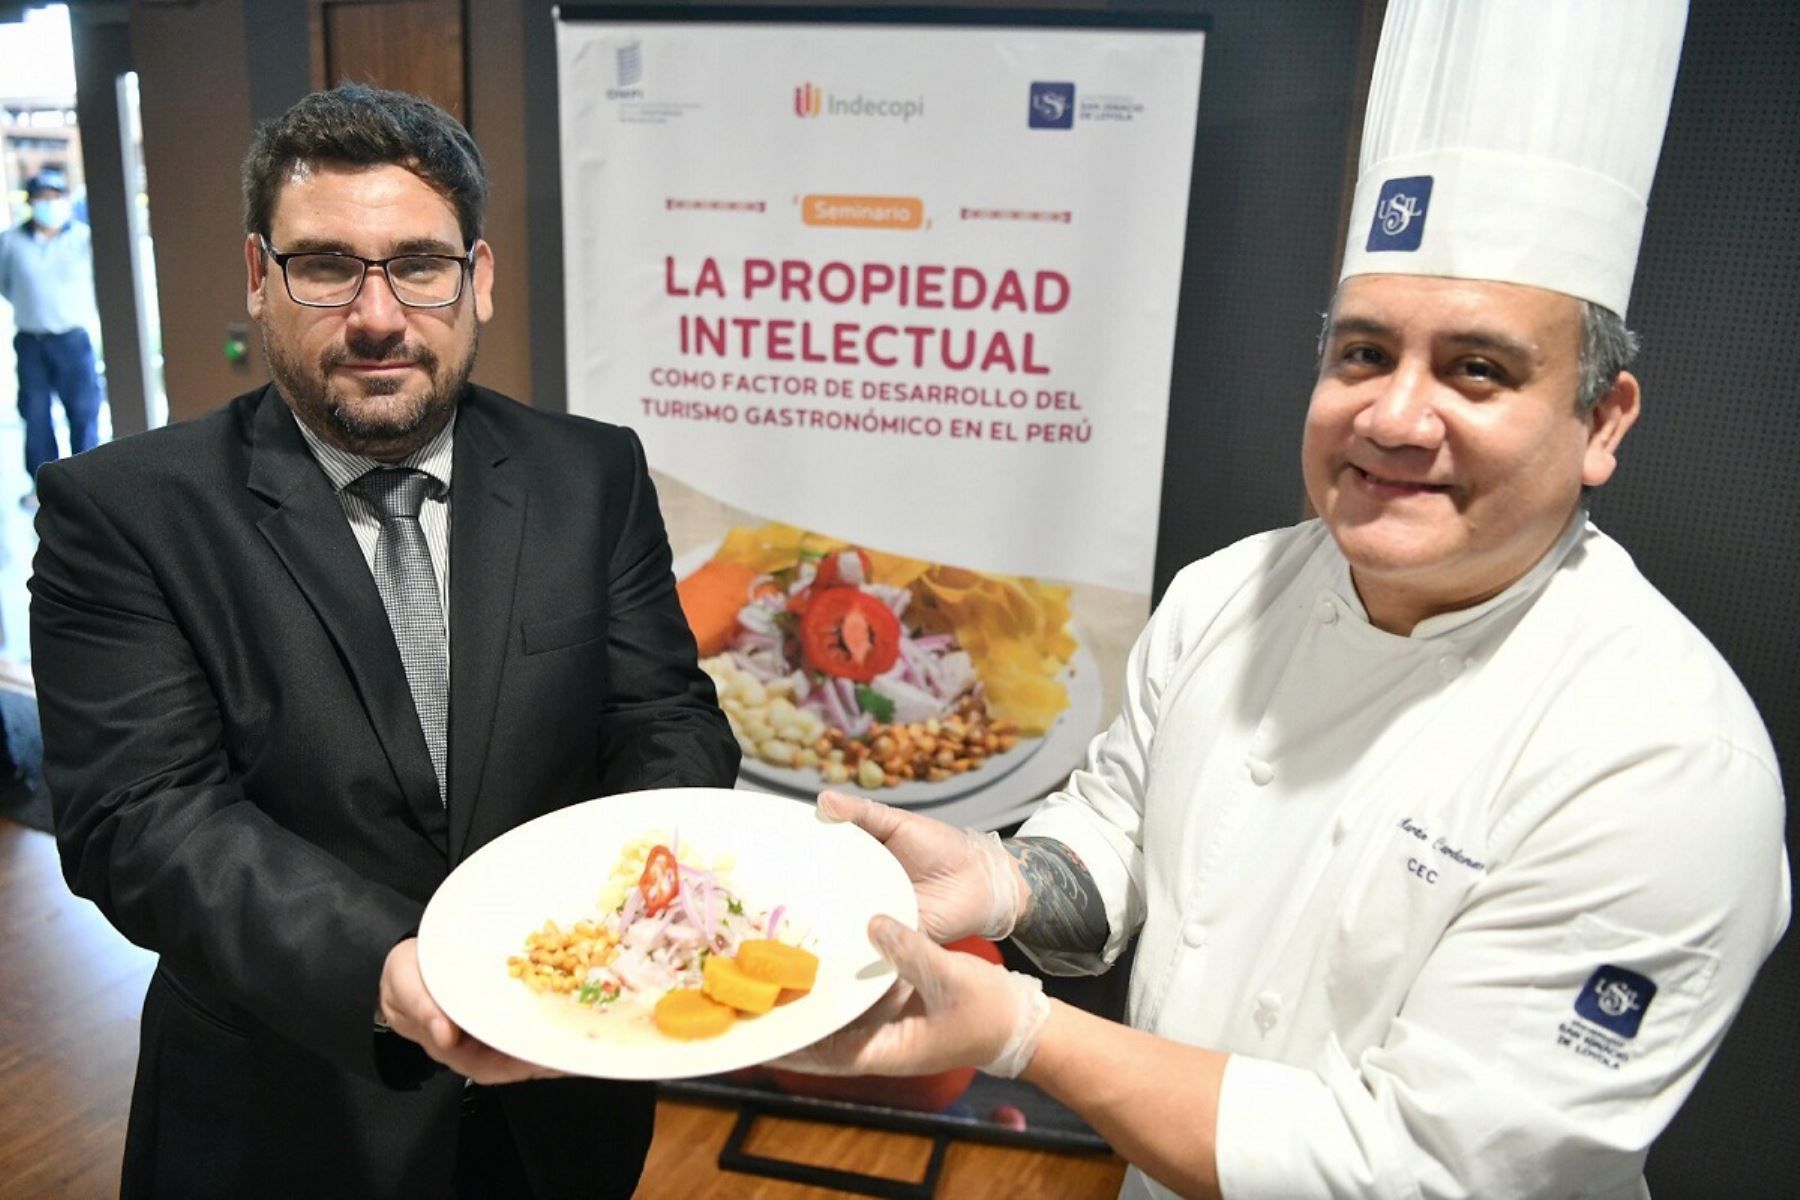 Presidente ejecutivo del Indecopi, Julián Palacín Gutiérrez, anunció que el Perú se alista a proteger la propiedad intelectual de su gastronomía. Foto: Cortesía.